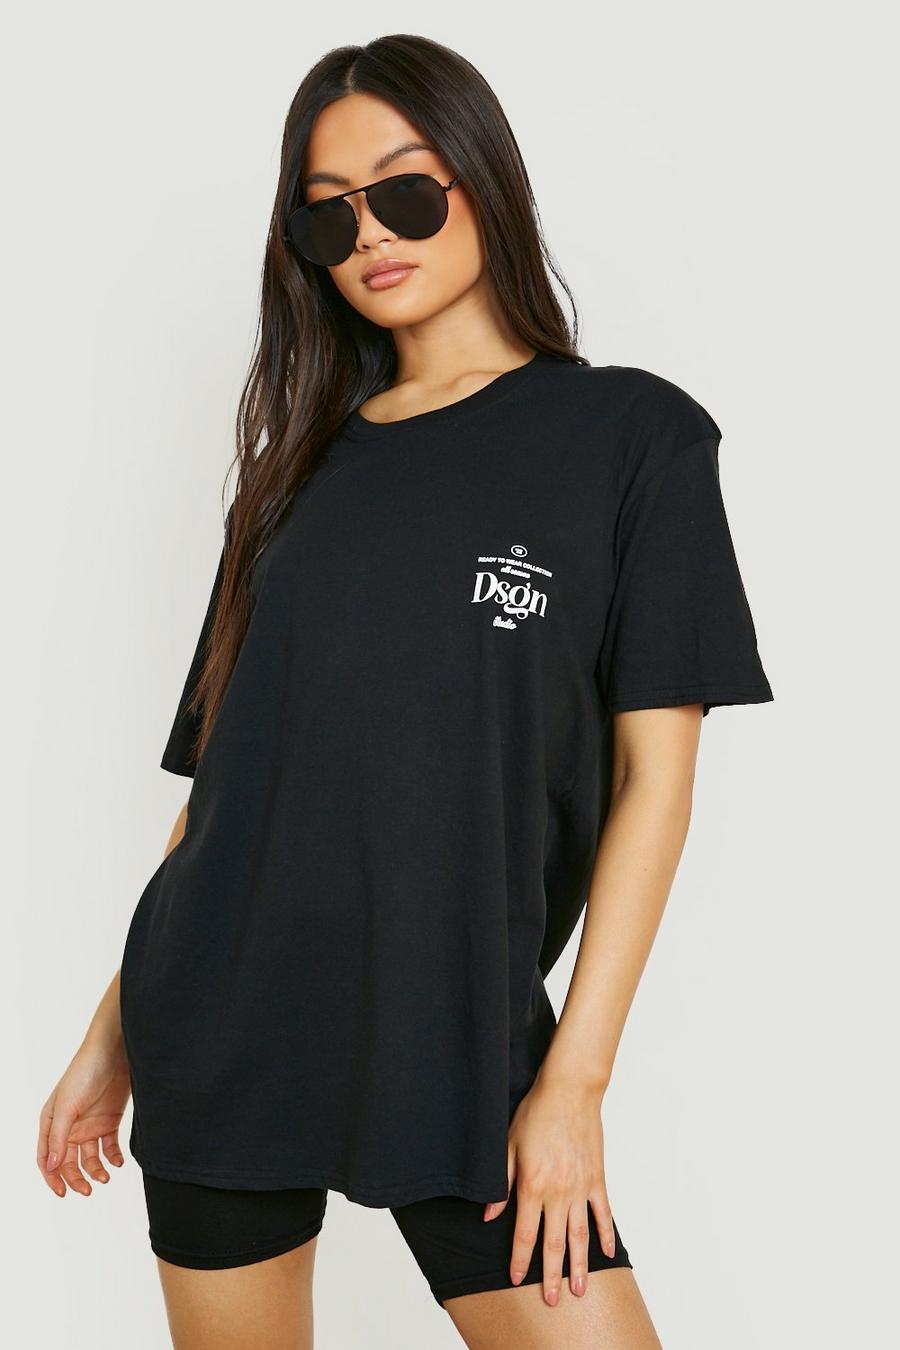 T-shirt con grafica Dsgn ad altezza taschino, Black